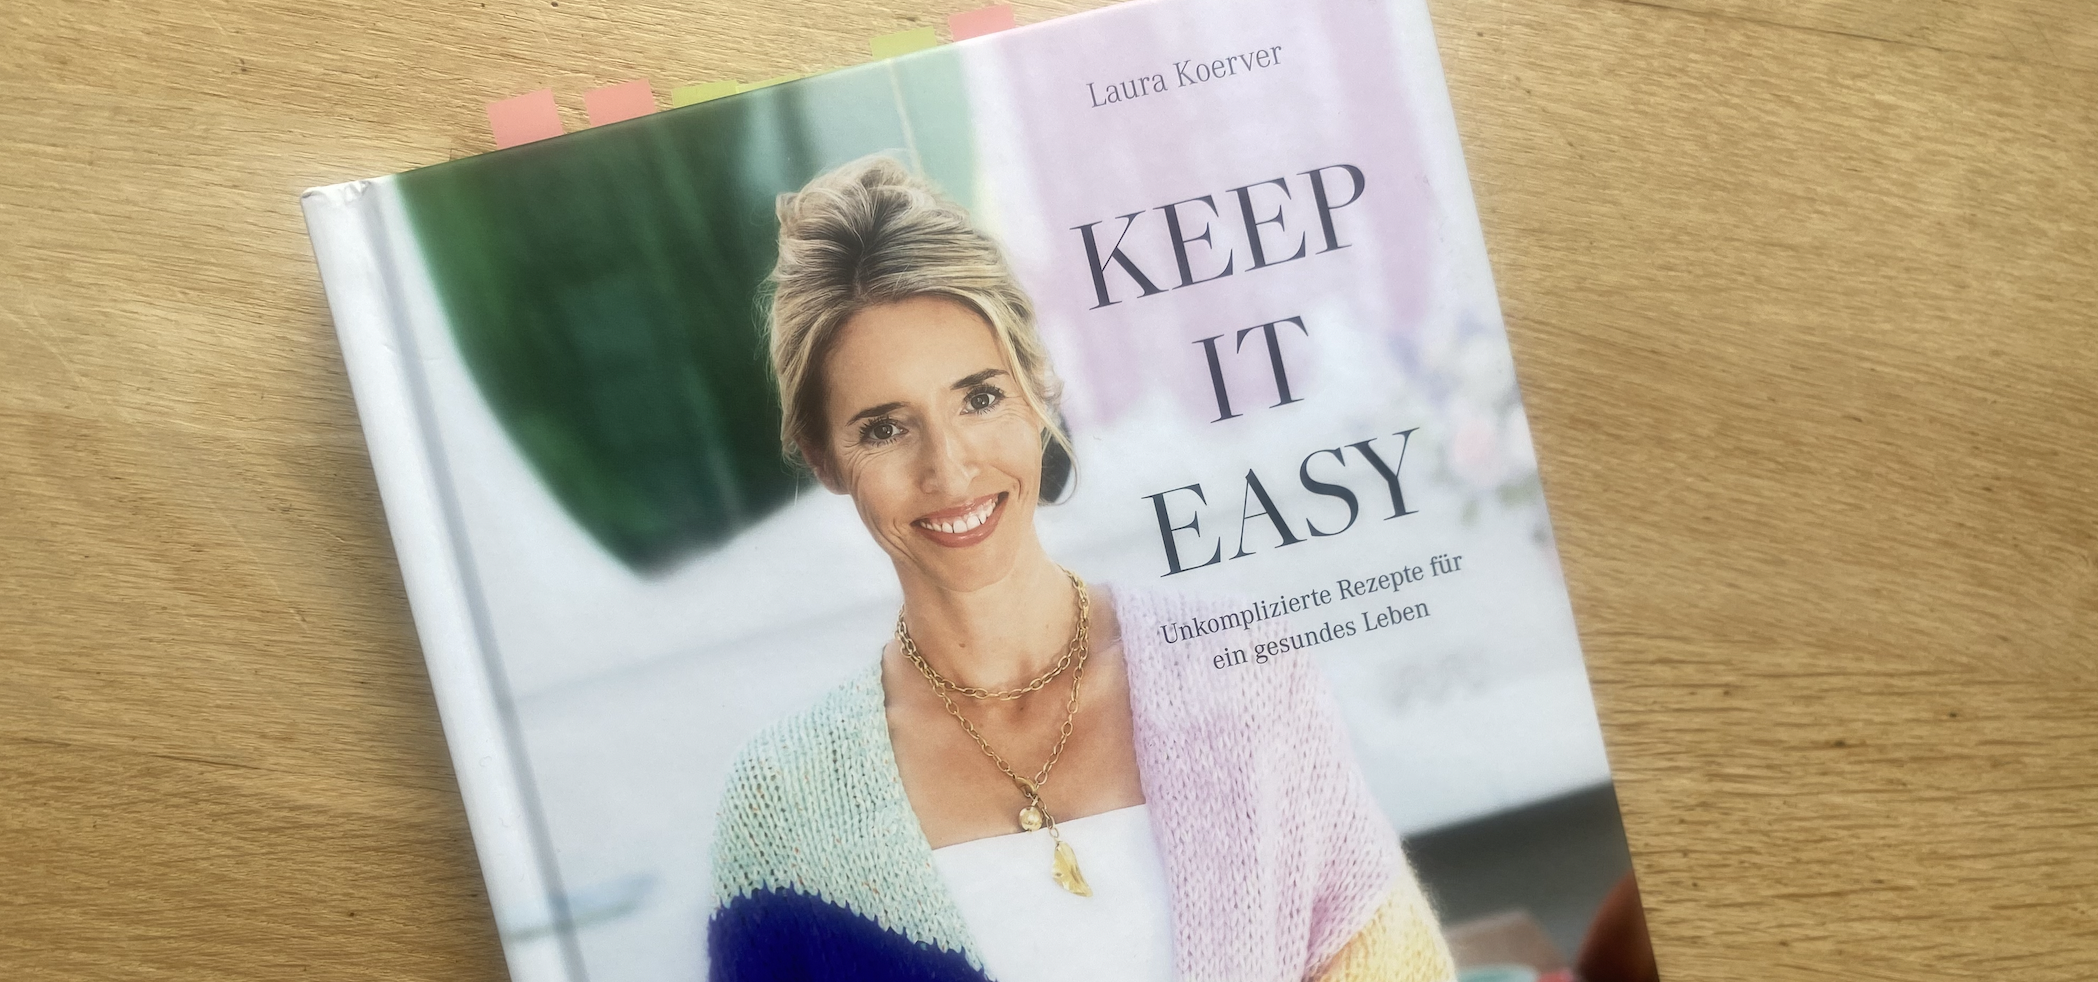 Titelbild des Artikels: "Keep it easy" - Kochen wie Laura Koerver